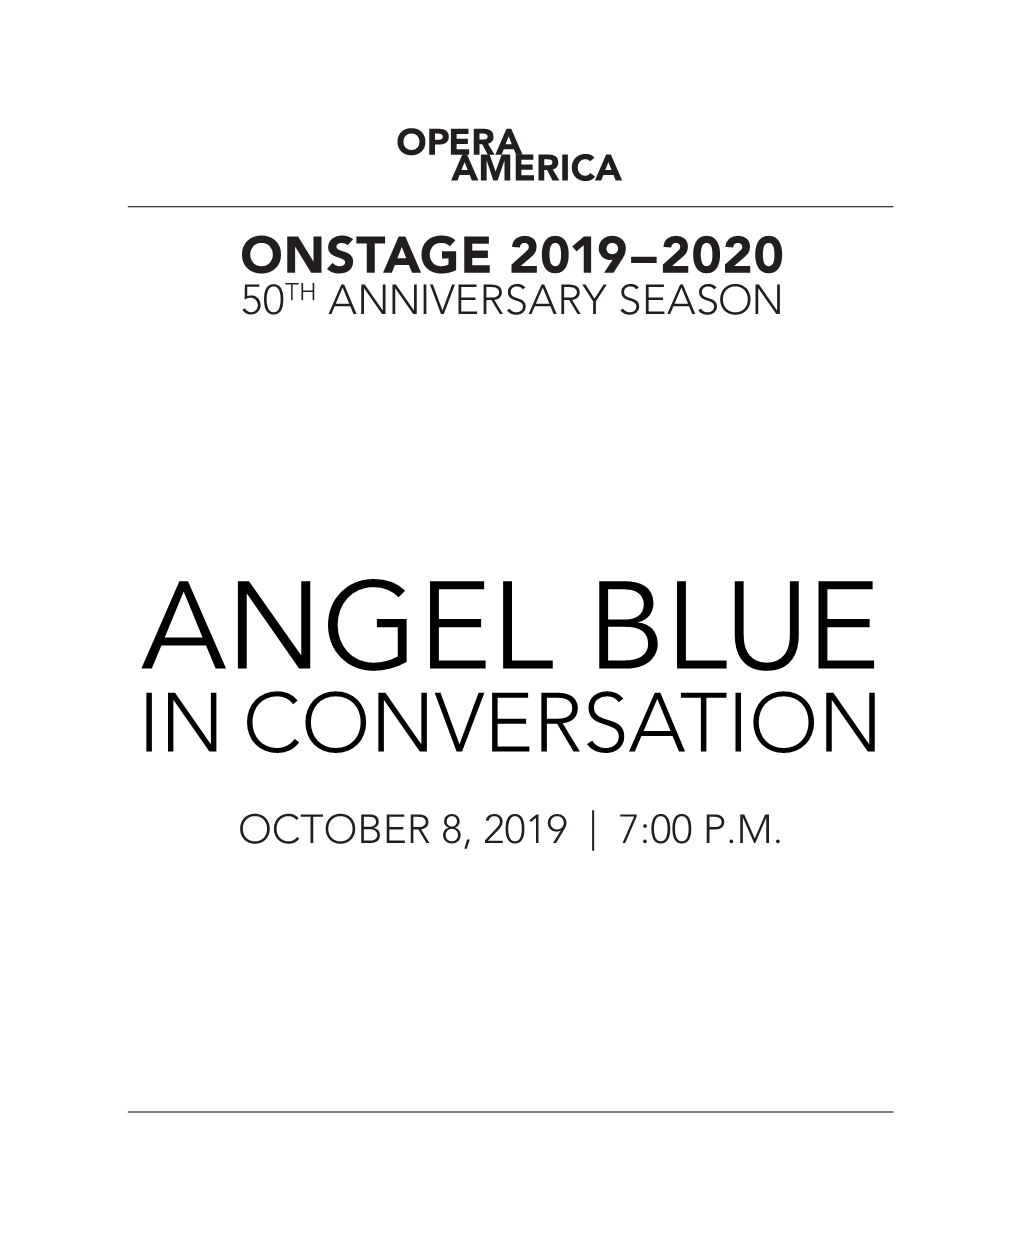 Angel Blue in Conversation